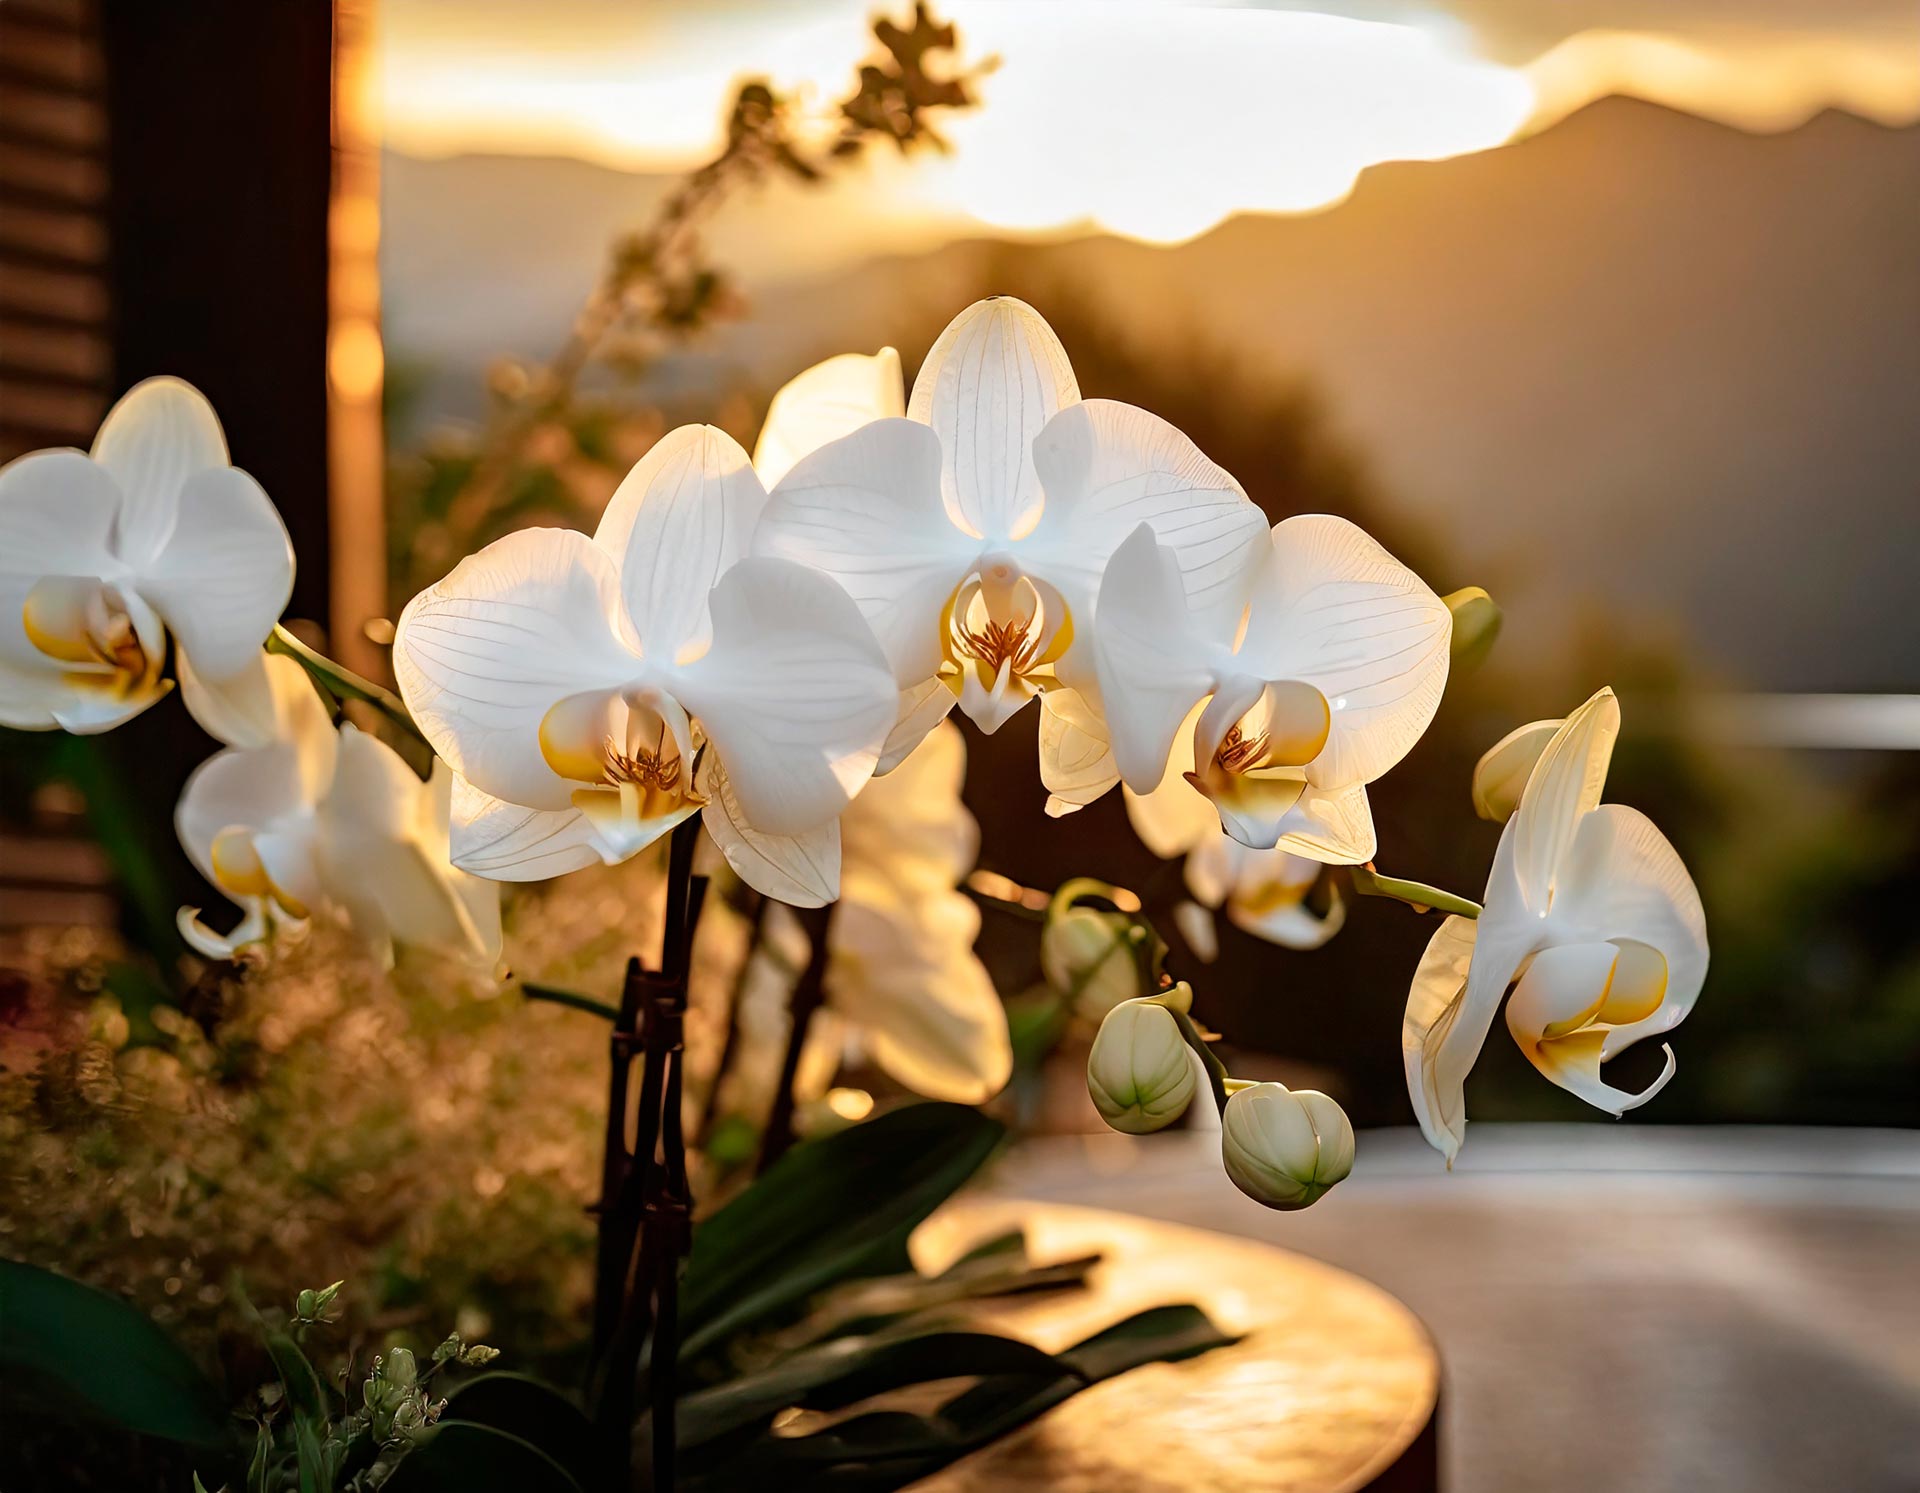 StilVerde: Orchidea, eleganza senza grandi esigenze